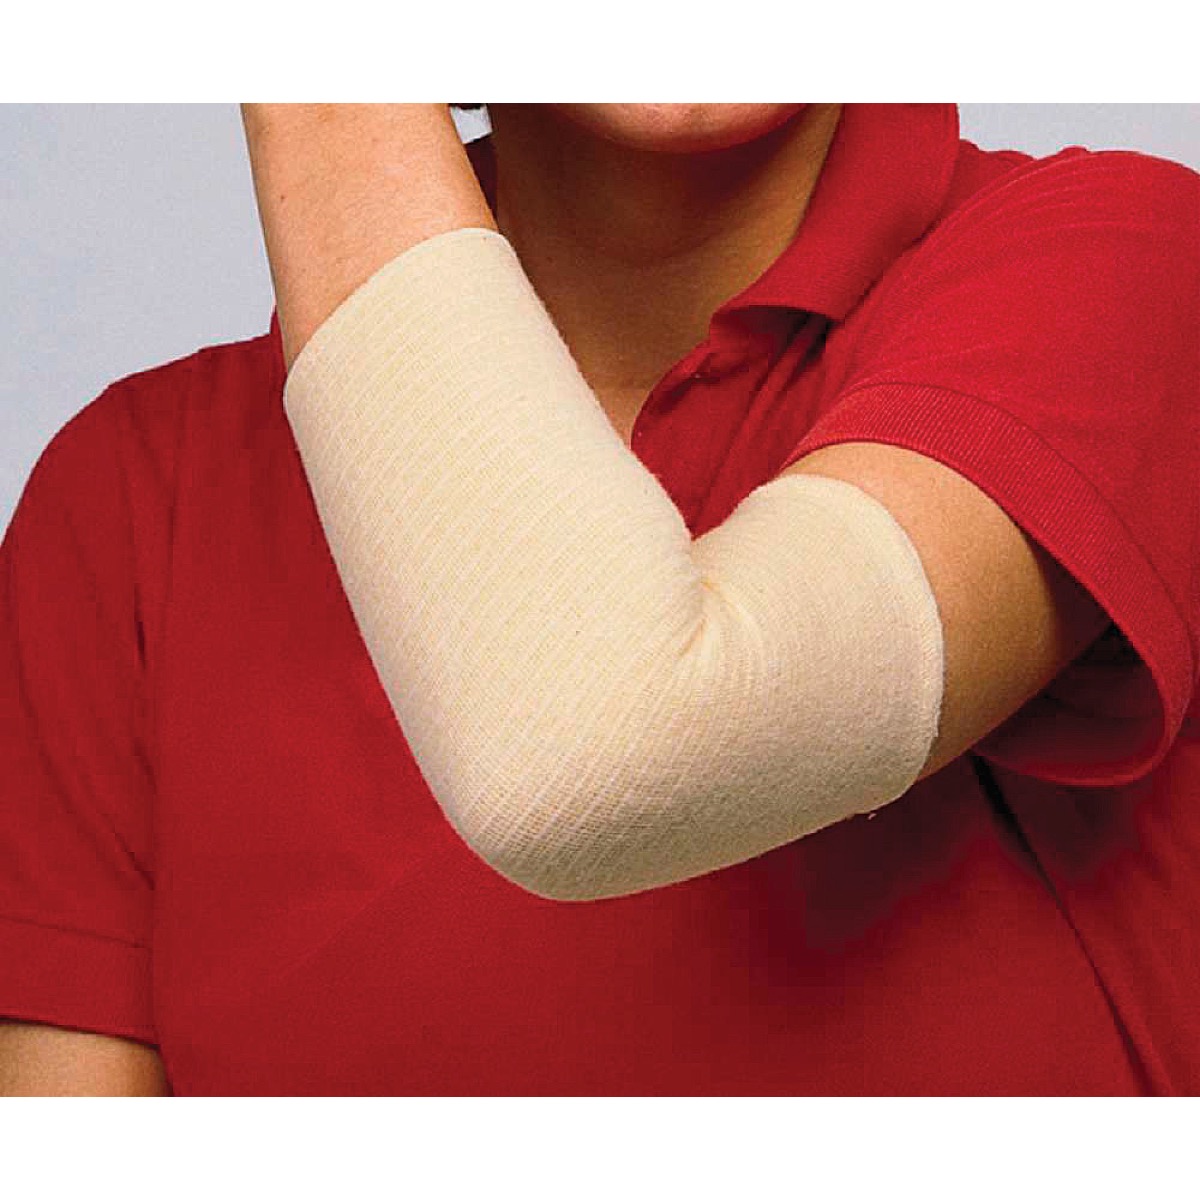 tg grip Elasticated Tubular Support Bandage--